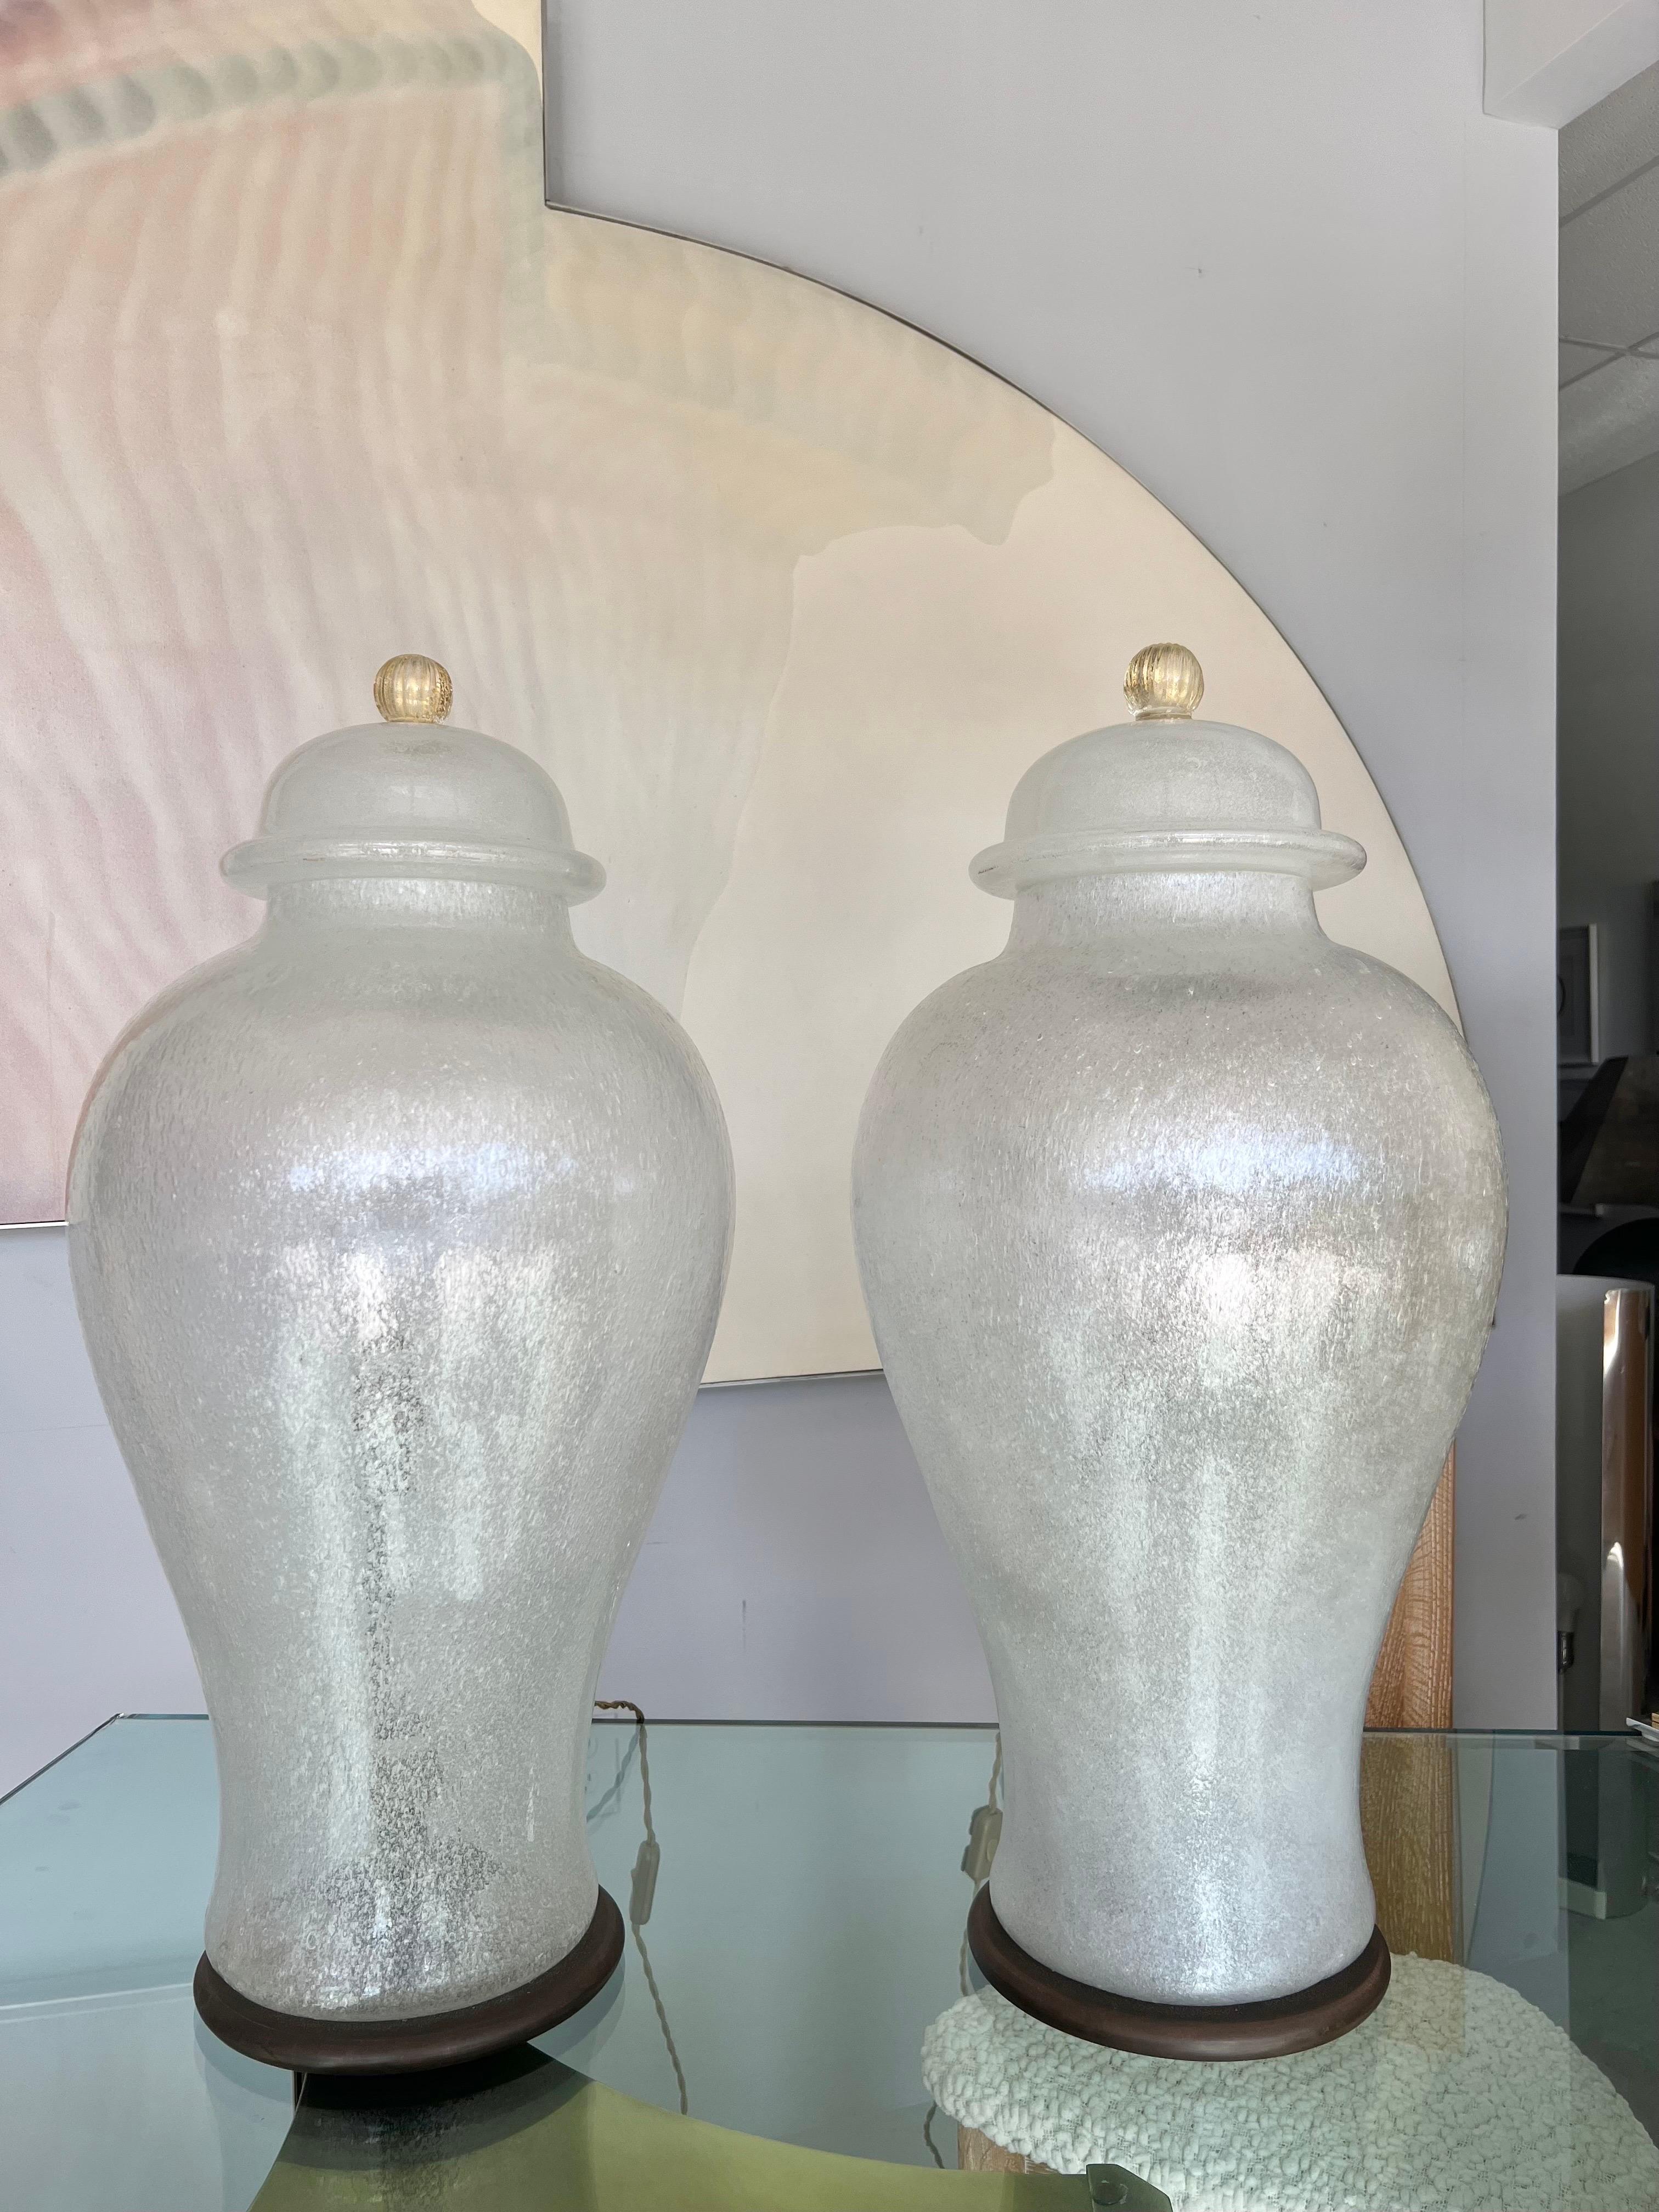 Paire monumentale d'urnes lumineuses en verre d'art Pulegoso par Seguso. Les couvercles sont amovibles et laissent apparaître des raccords en bronze pour 2 ampoules chacun. Bases rondes en bronze, cordons en soie torsadée. Signé sur le métal à